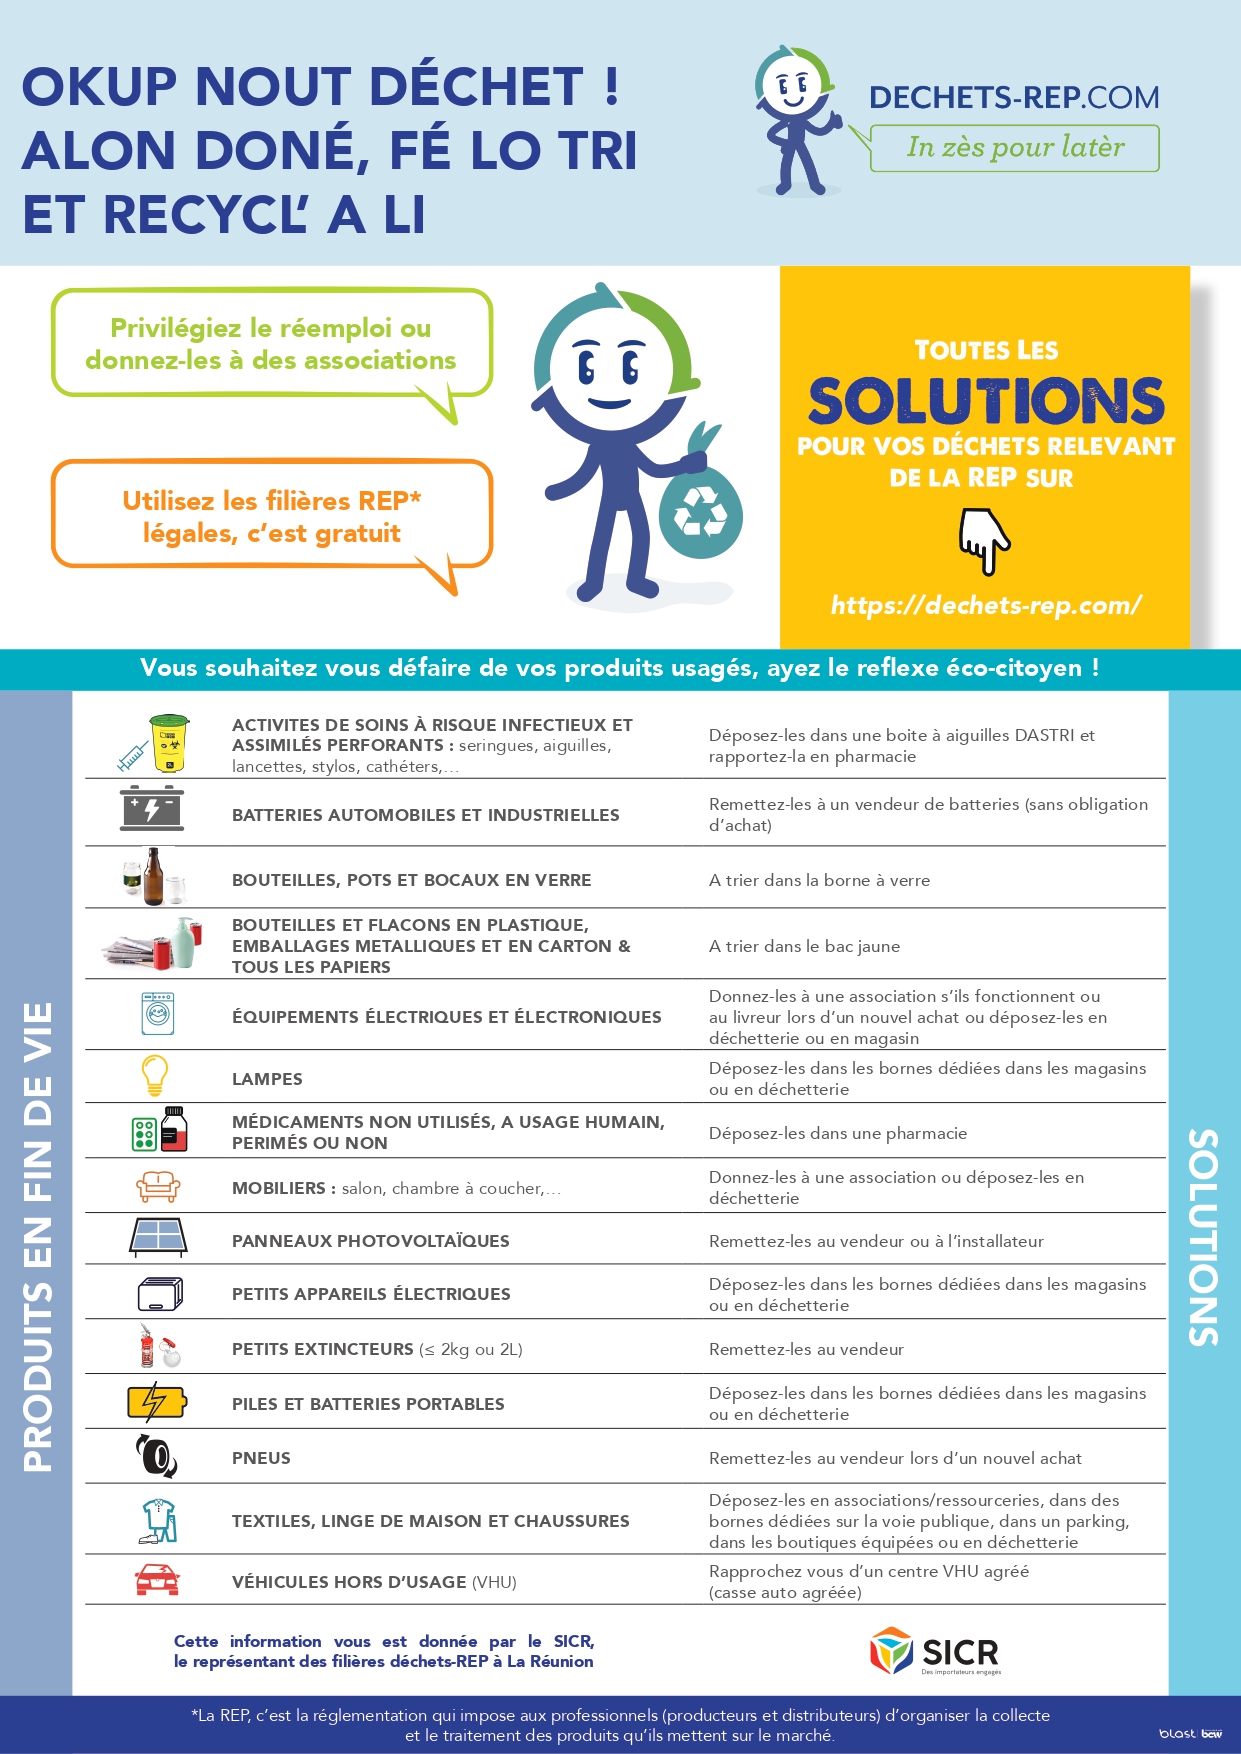 Réunion - Info pour les particuliers : Des solutions pour vos déchets relevant de la REP